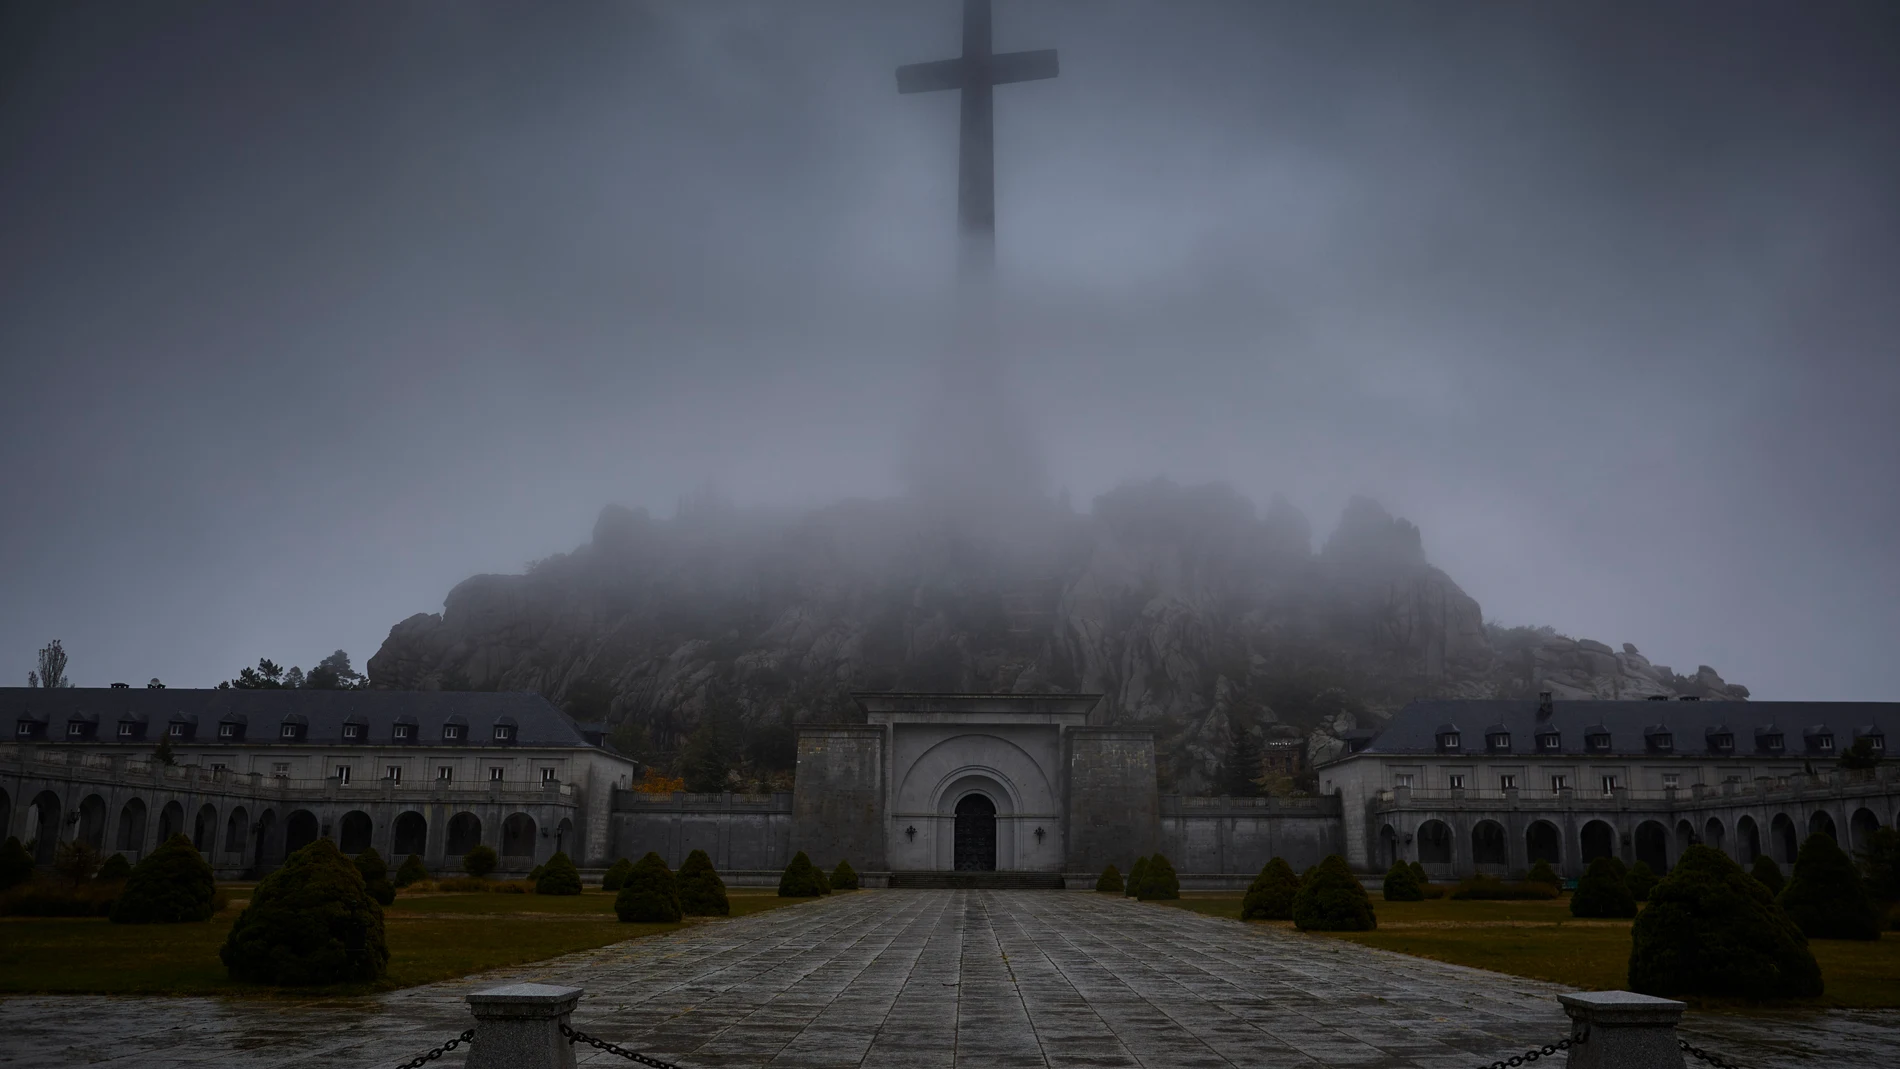 Vista frontal del Valle de los Caídos